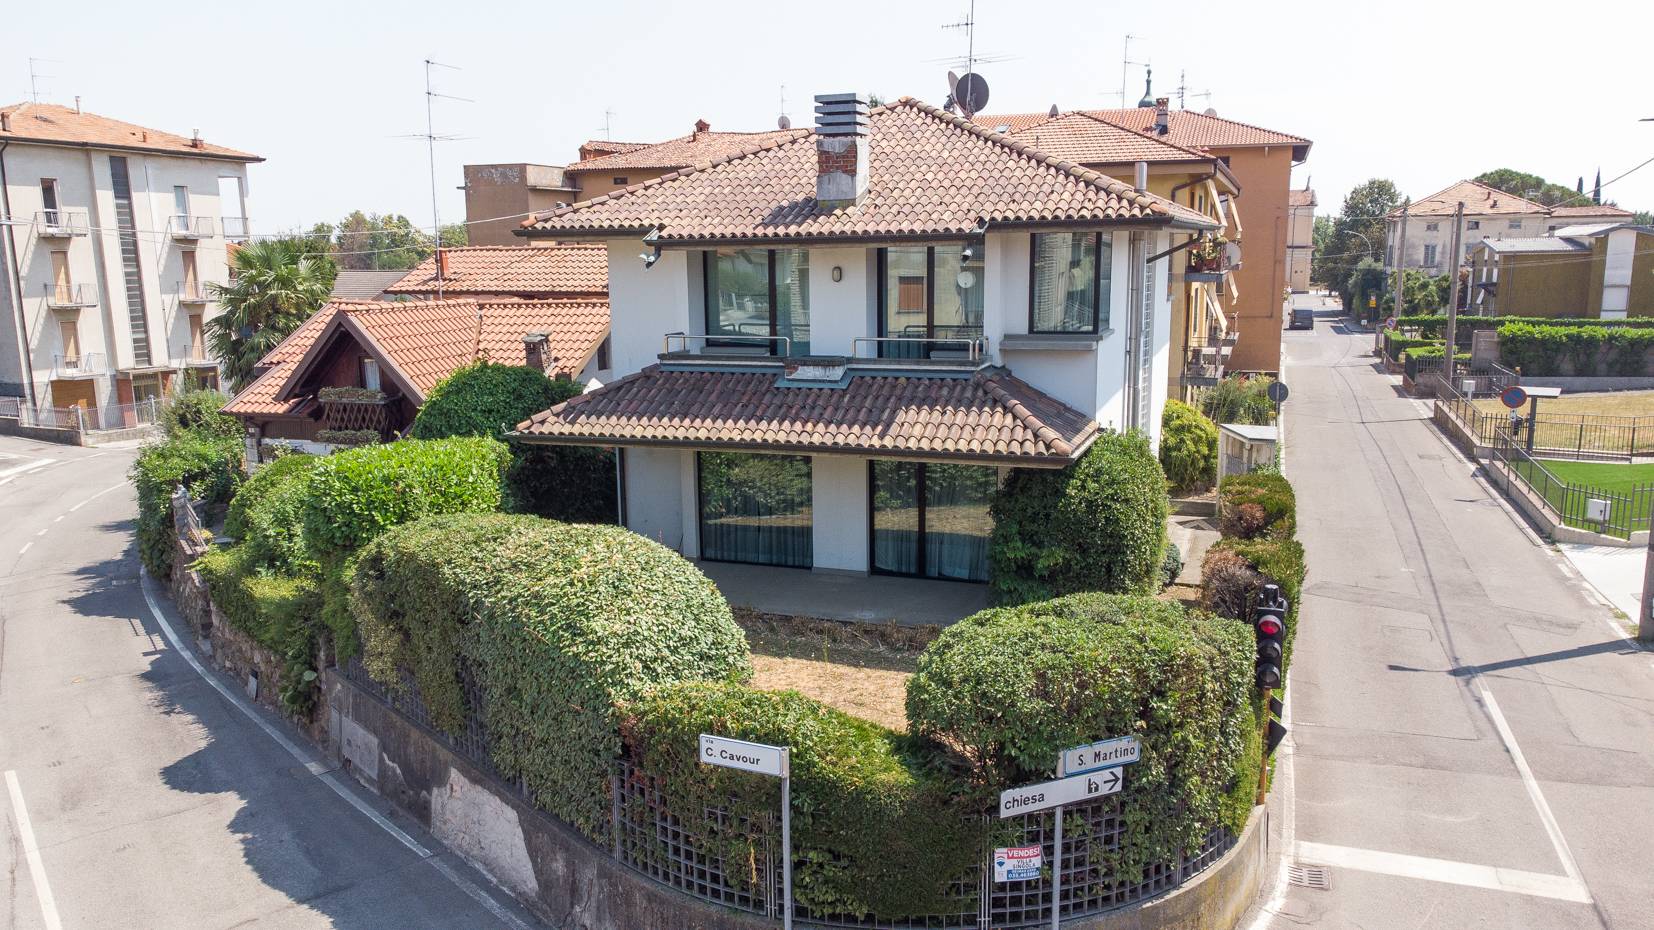 Villa in vendita a Carvico, 7 locali, prezzo € 318.000 | PortaleAgenzieImmobiliari.it